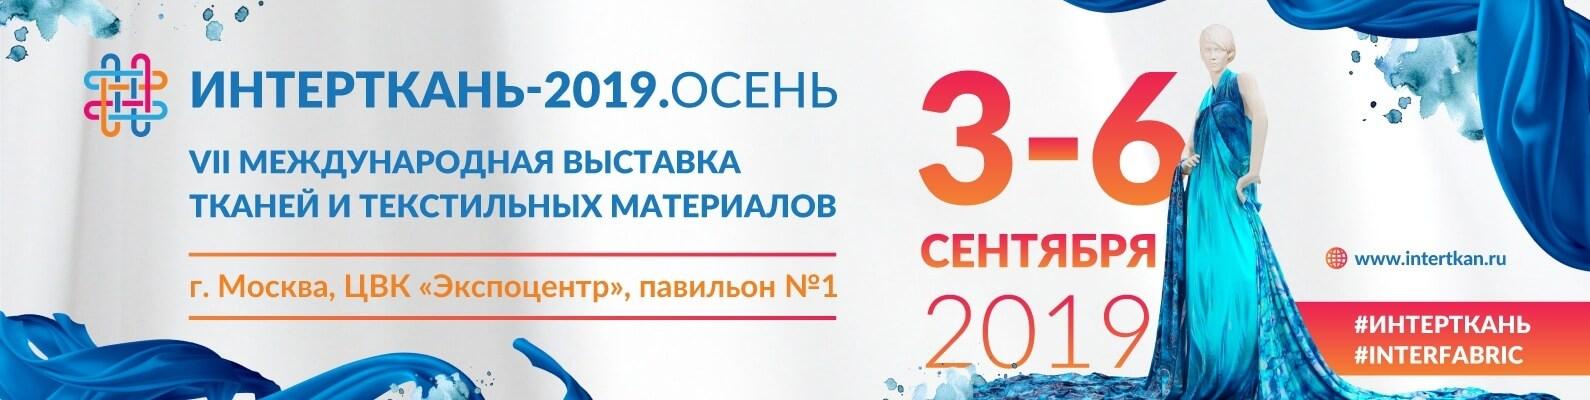 Проведение VII-ой Международной выставки «ИНТЕРТКАНЬ-2019.Осень»